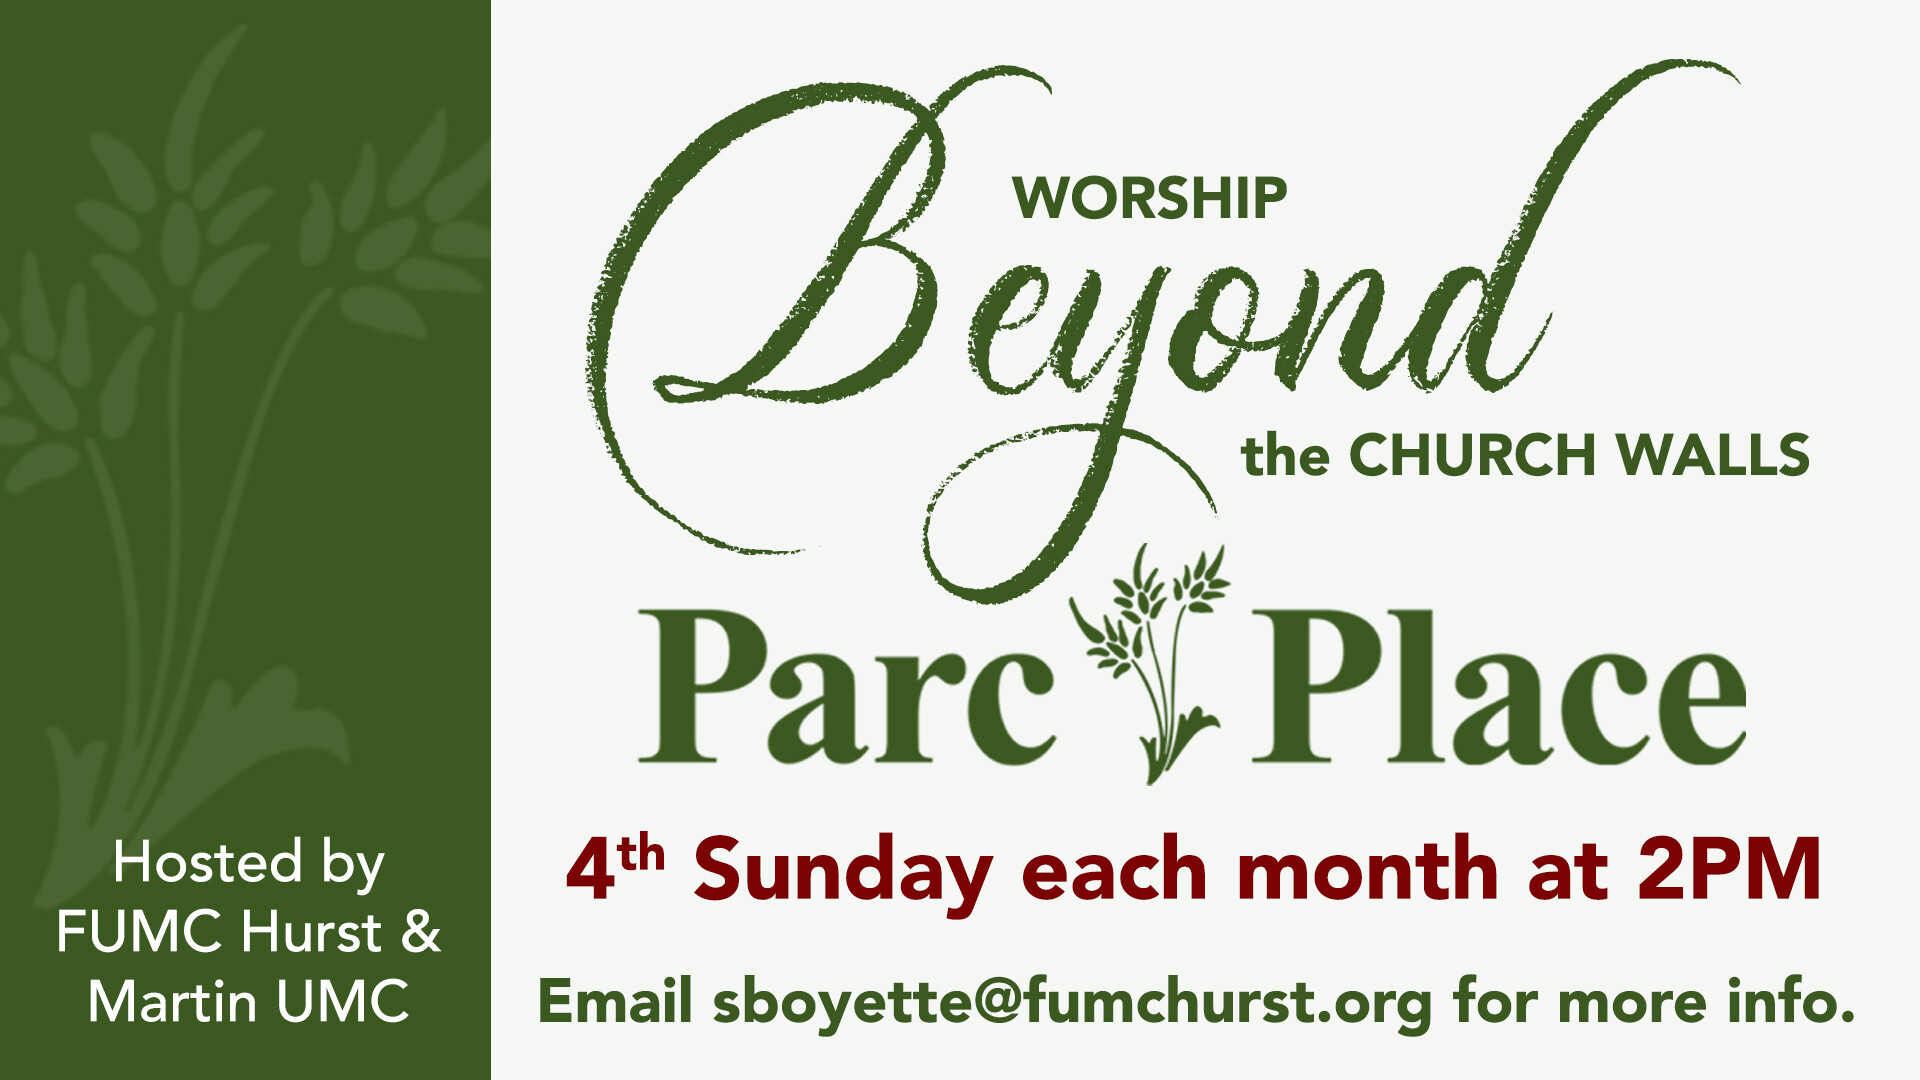 Parc Place Worship Service